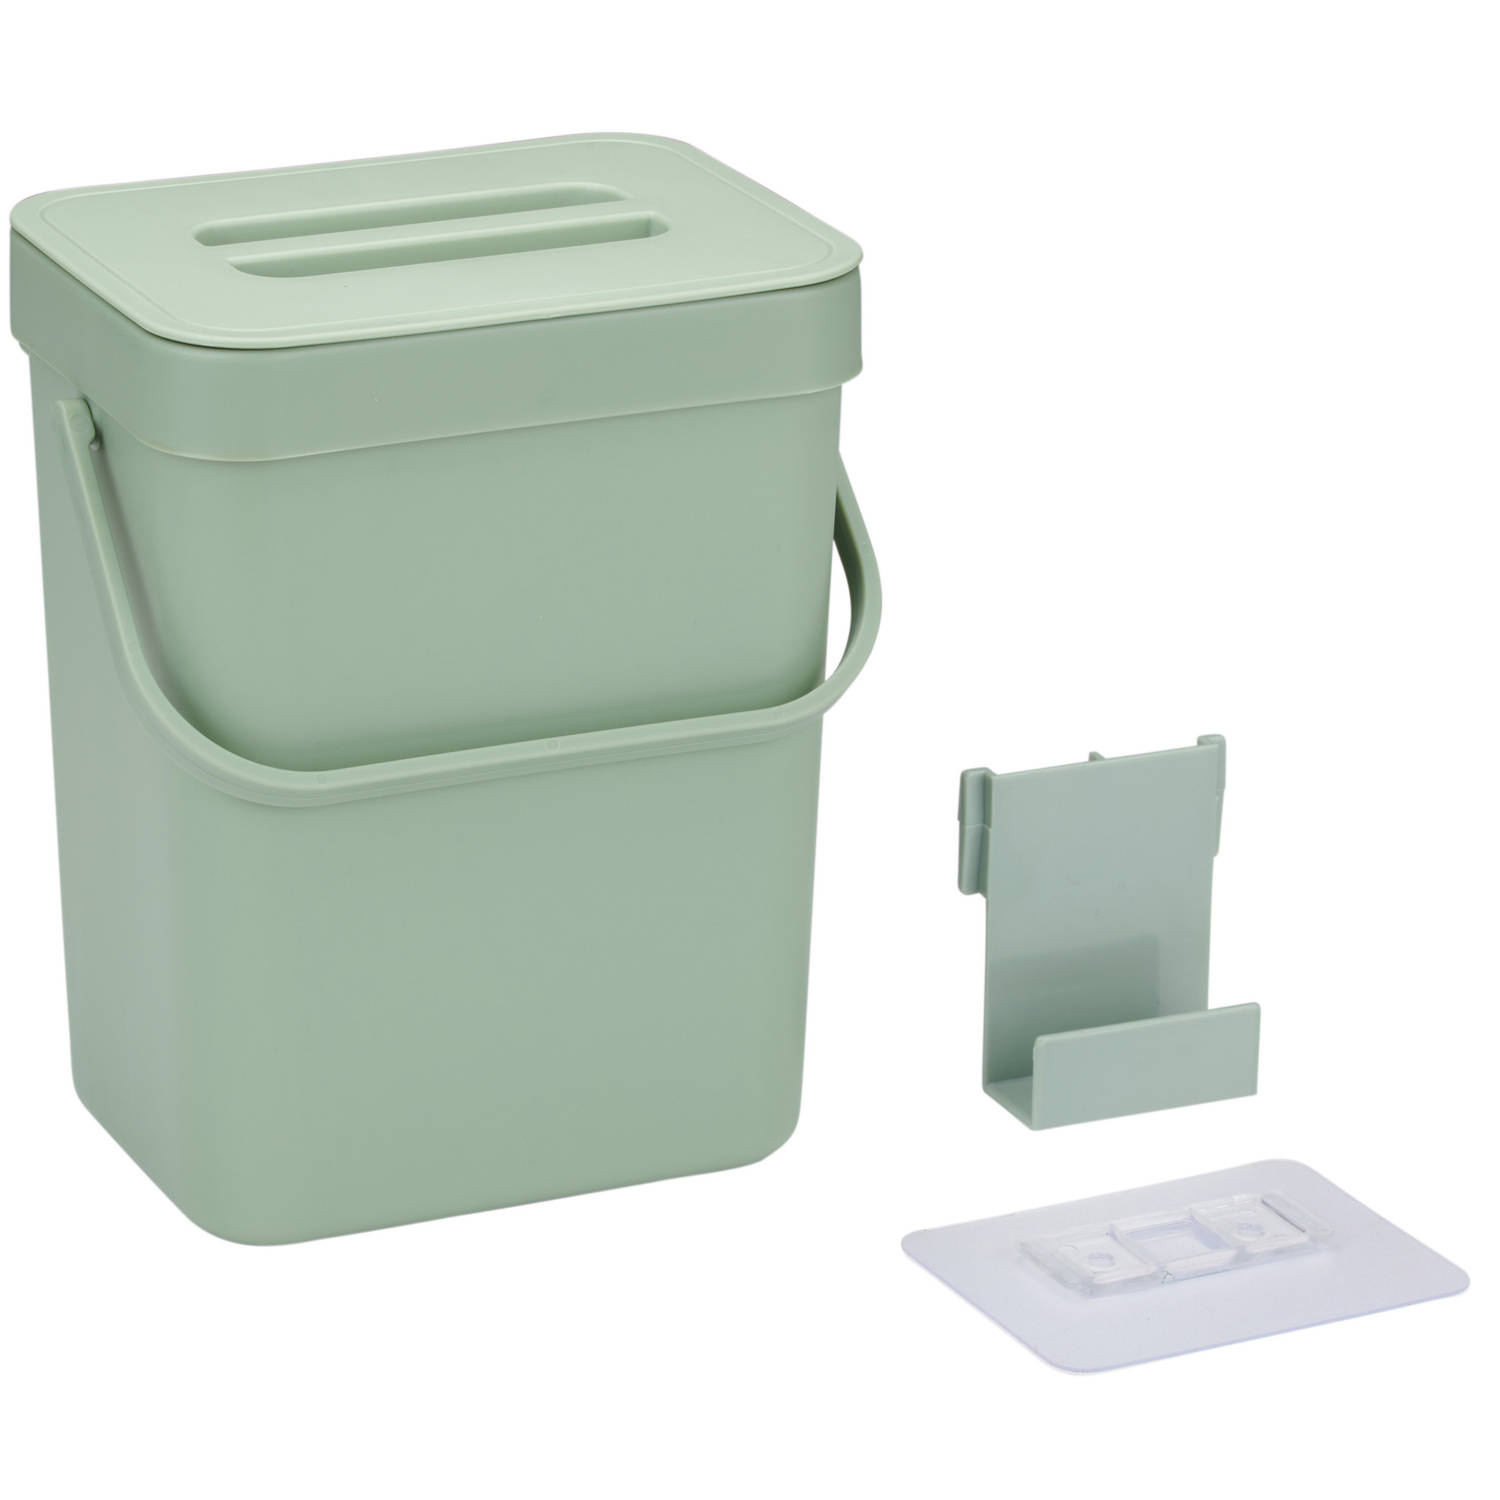 Gft afvalbakje voor aanrecht of aan keuken kastje 5L groen afsluitbaar 24 x 19 x 14 cm Prullenbakken